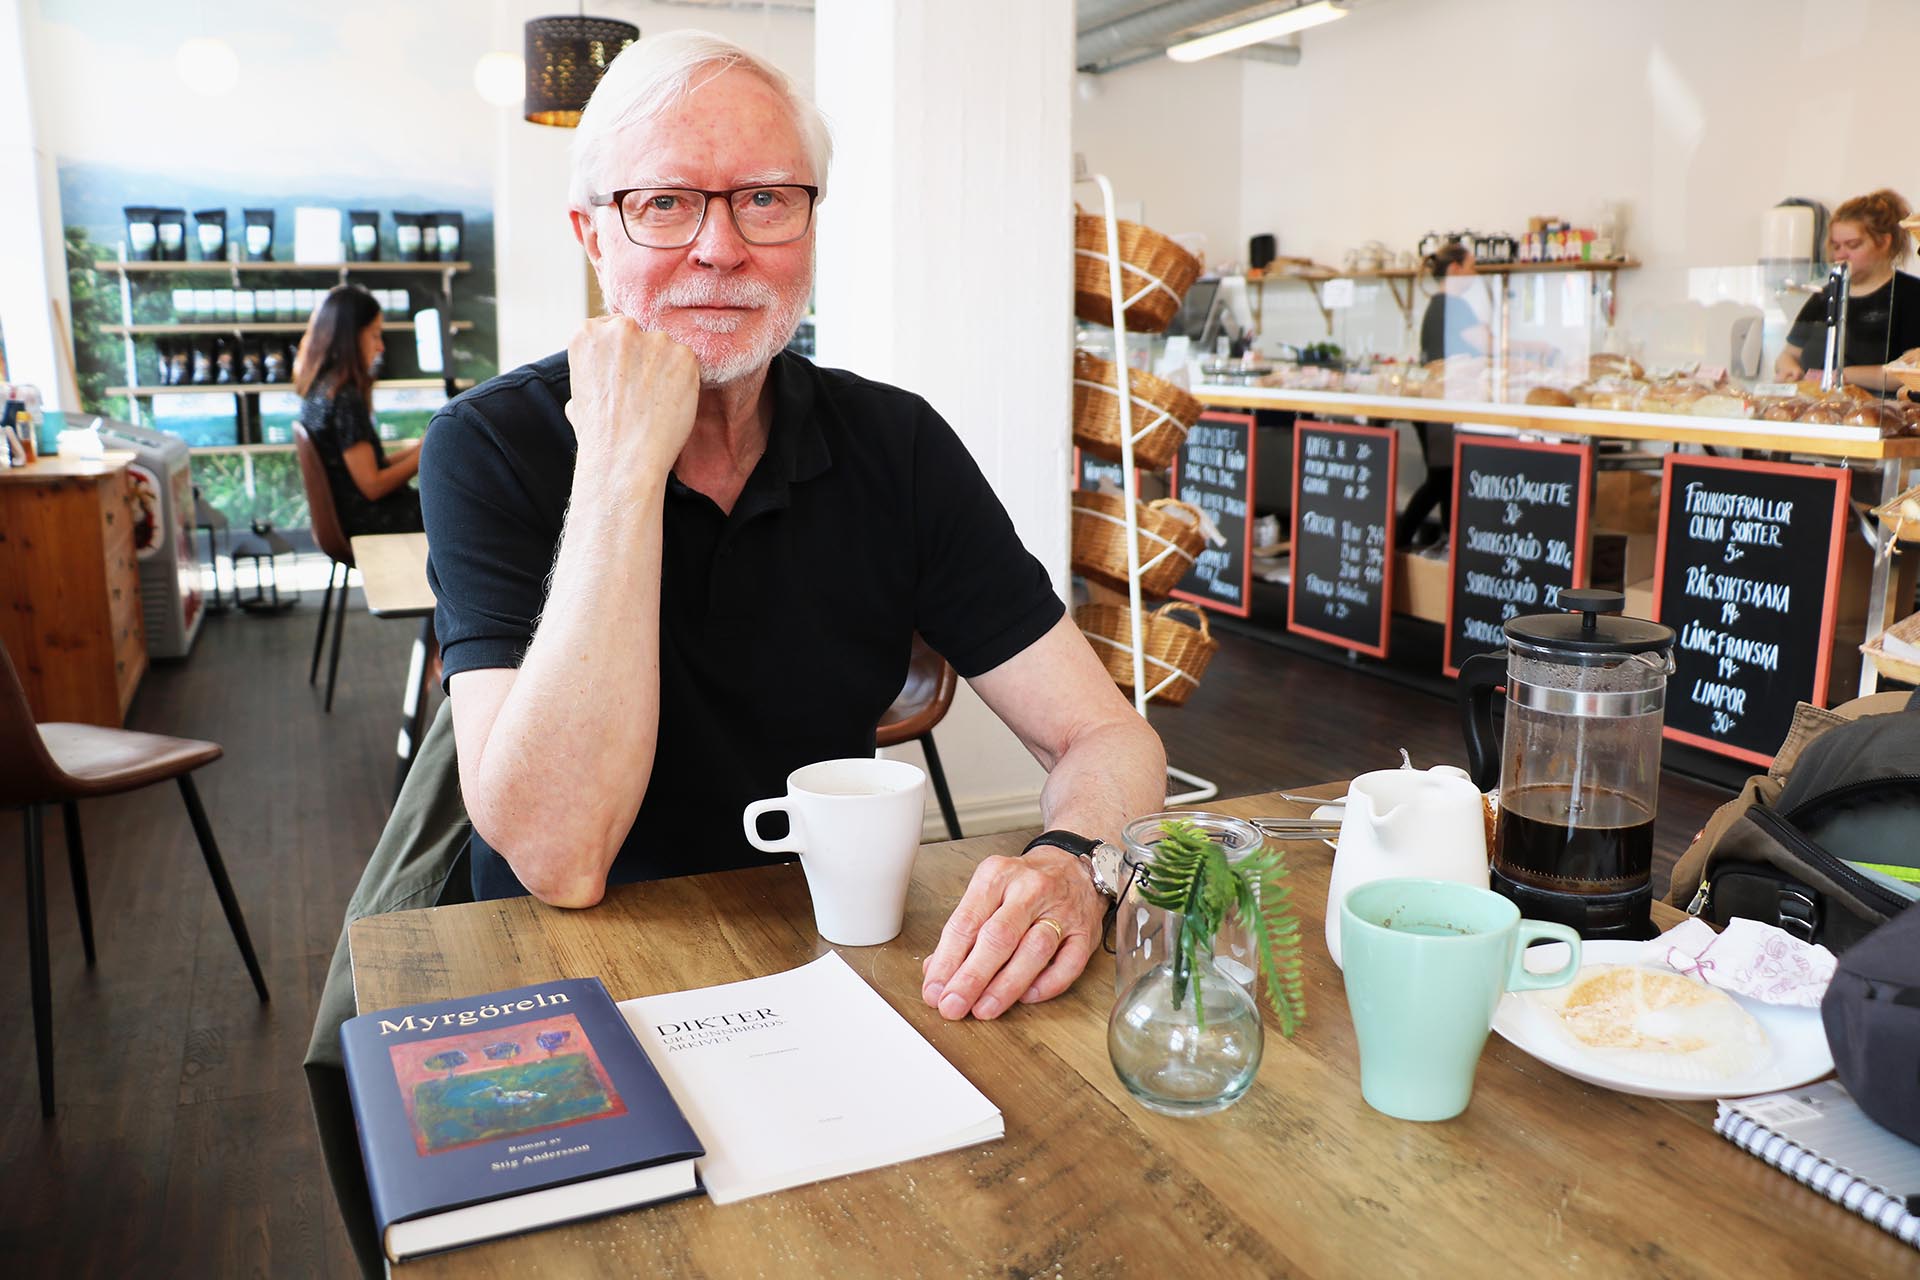 En man med svart tröja och grått hår sitter på ett fik med en kaffekopp och böcker framför sig